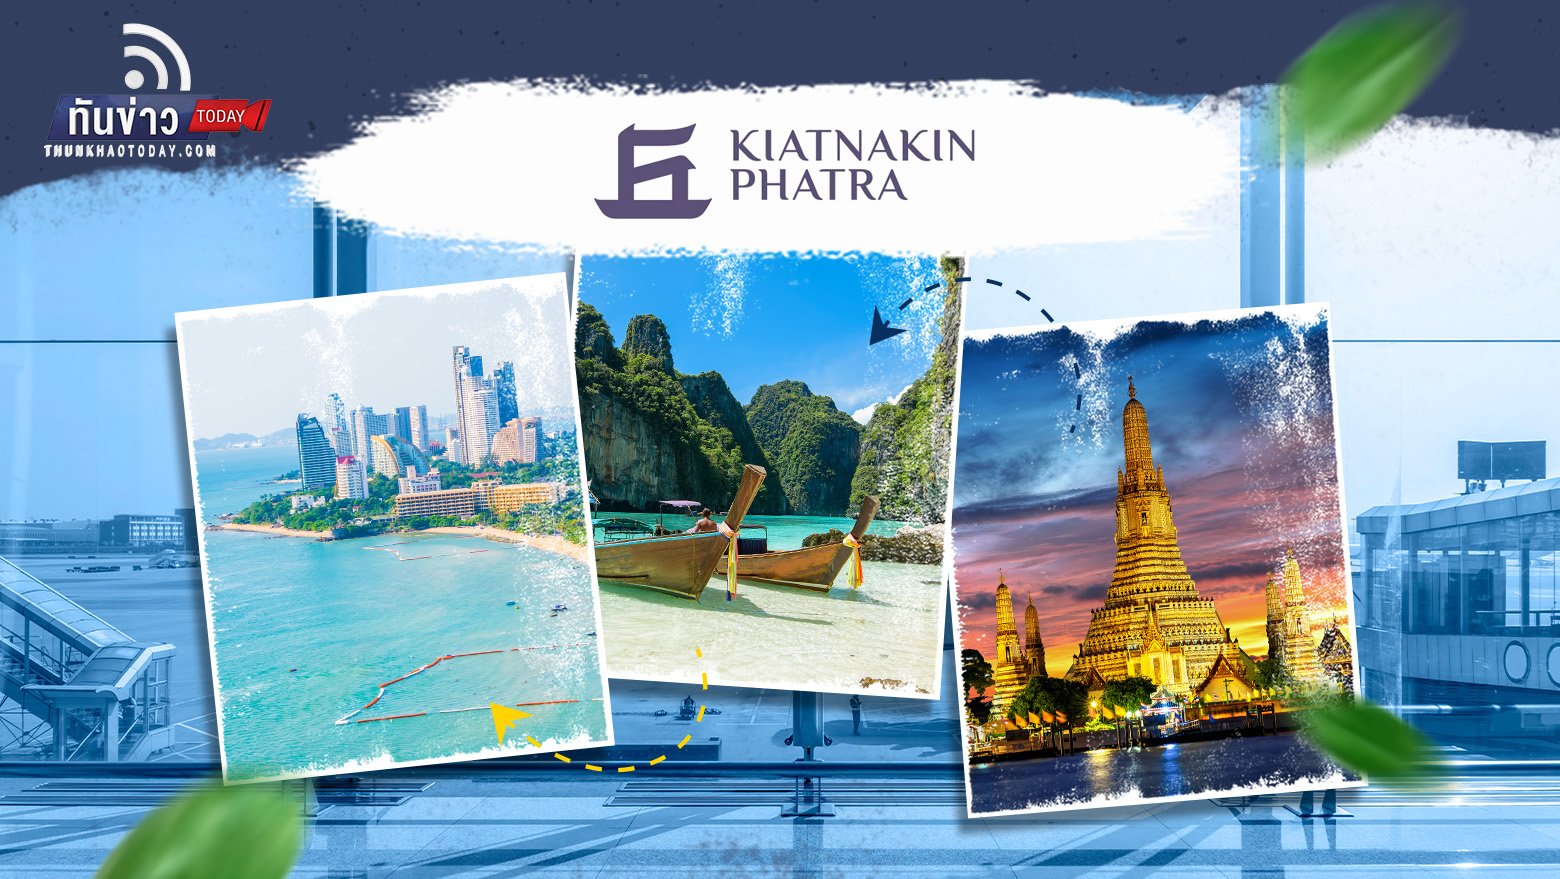 KKP แนะ 5 แนวทางให้การท่องเที่ยวไทยไปไกลกว่าเดิมในระยะยาว